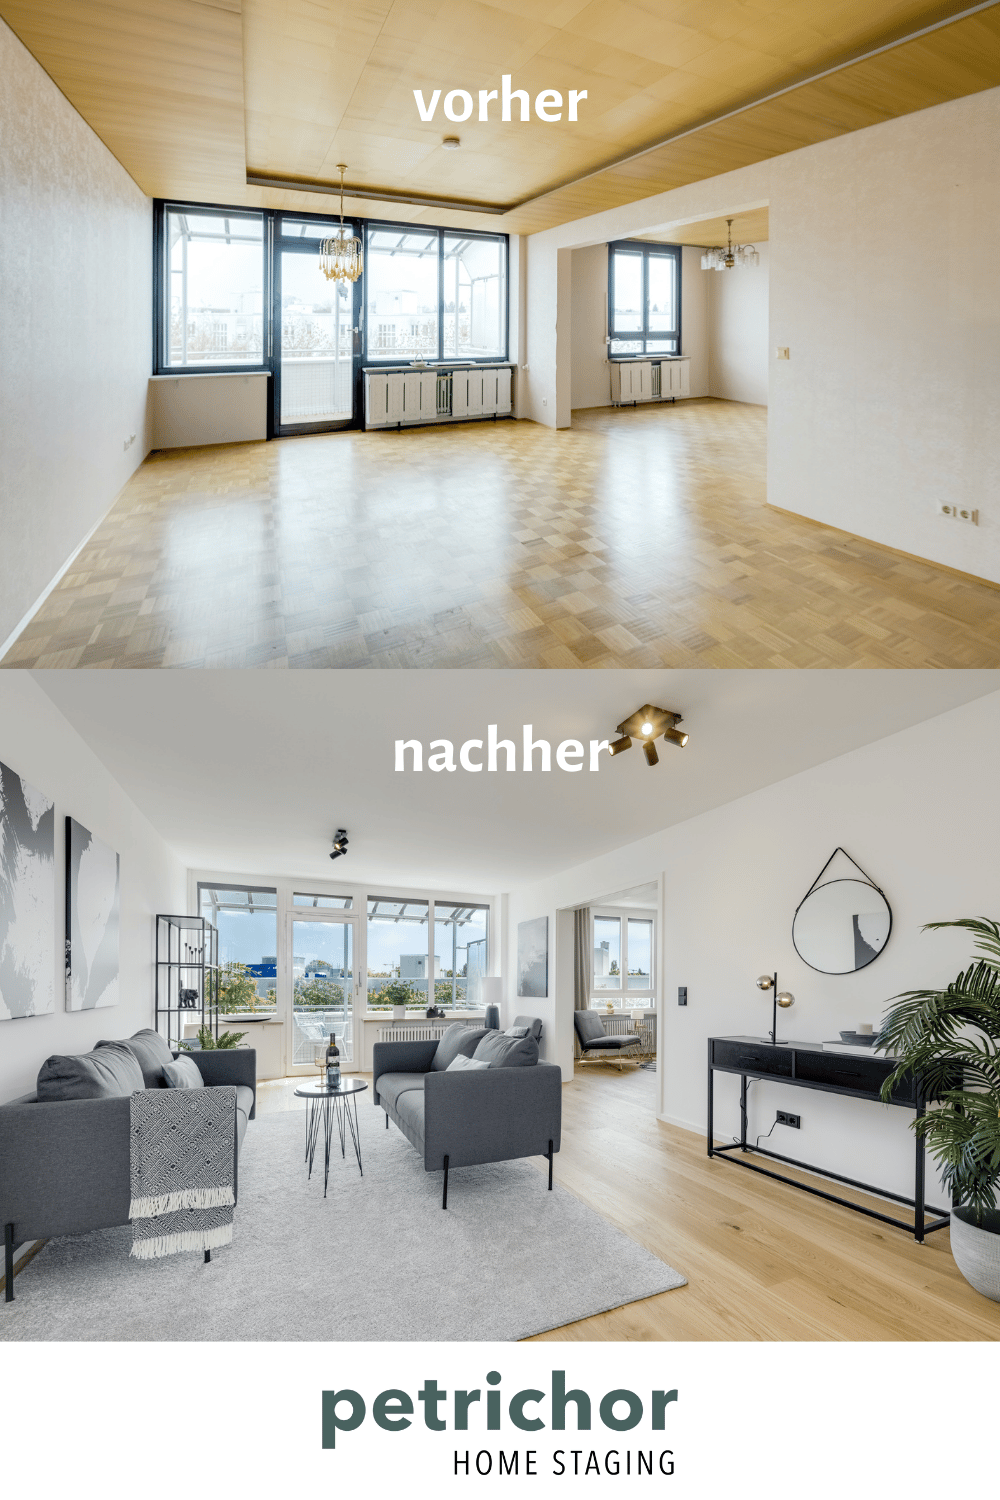 Wohnen Home Staging Petrichor fix & Flip, Projektentwicklung münchen, Interiorstyling